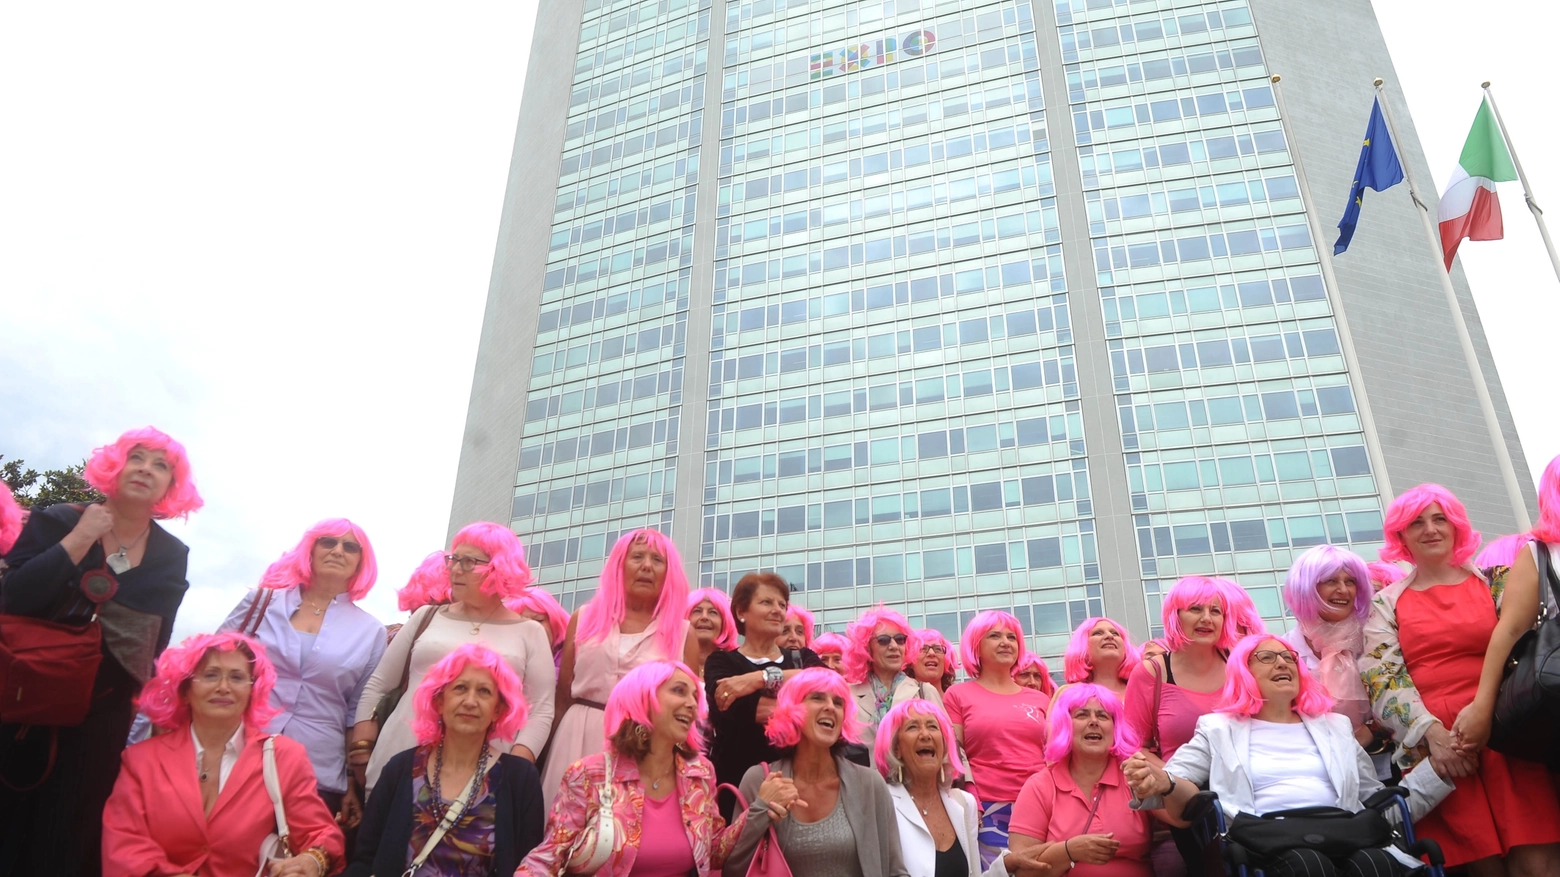 Tumore al seno: parrucche rosa per sensibilizzare sull'importanza della prevenzione (Newpress)